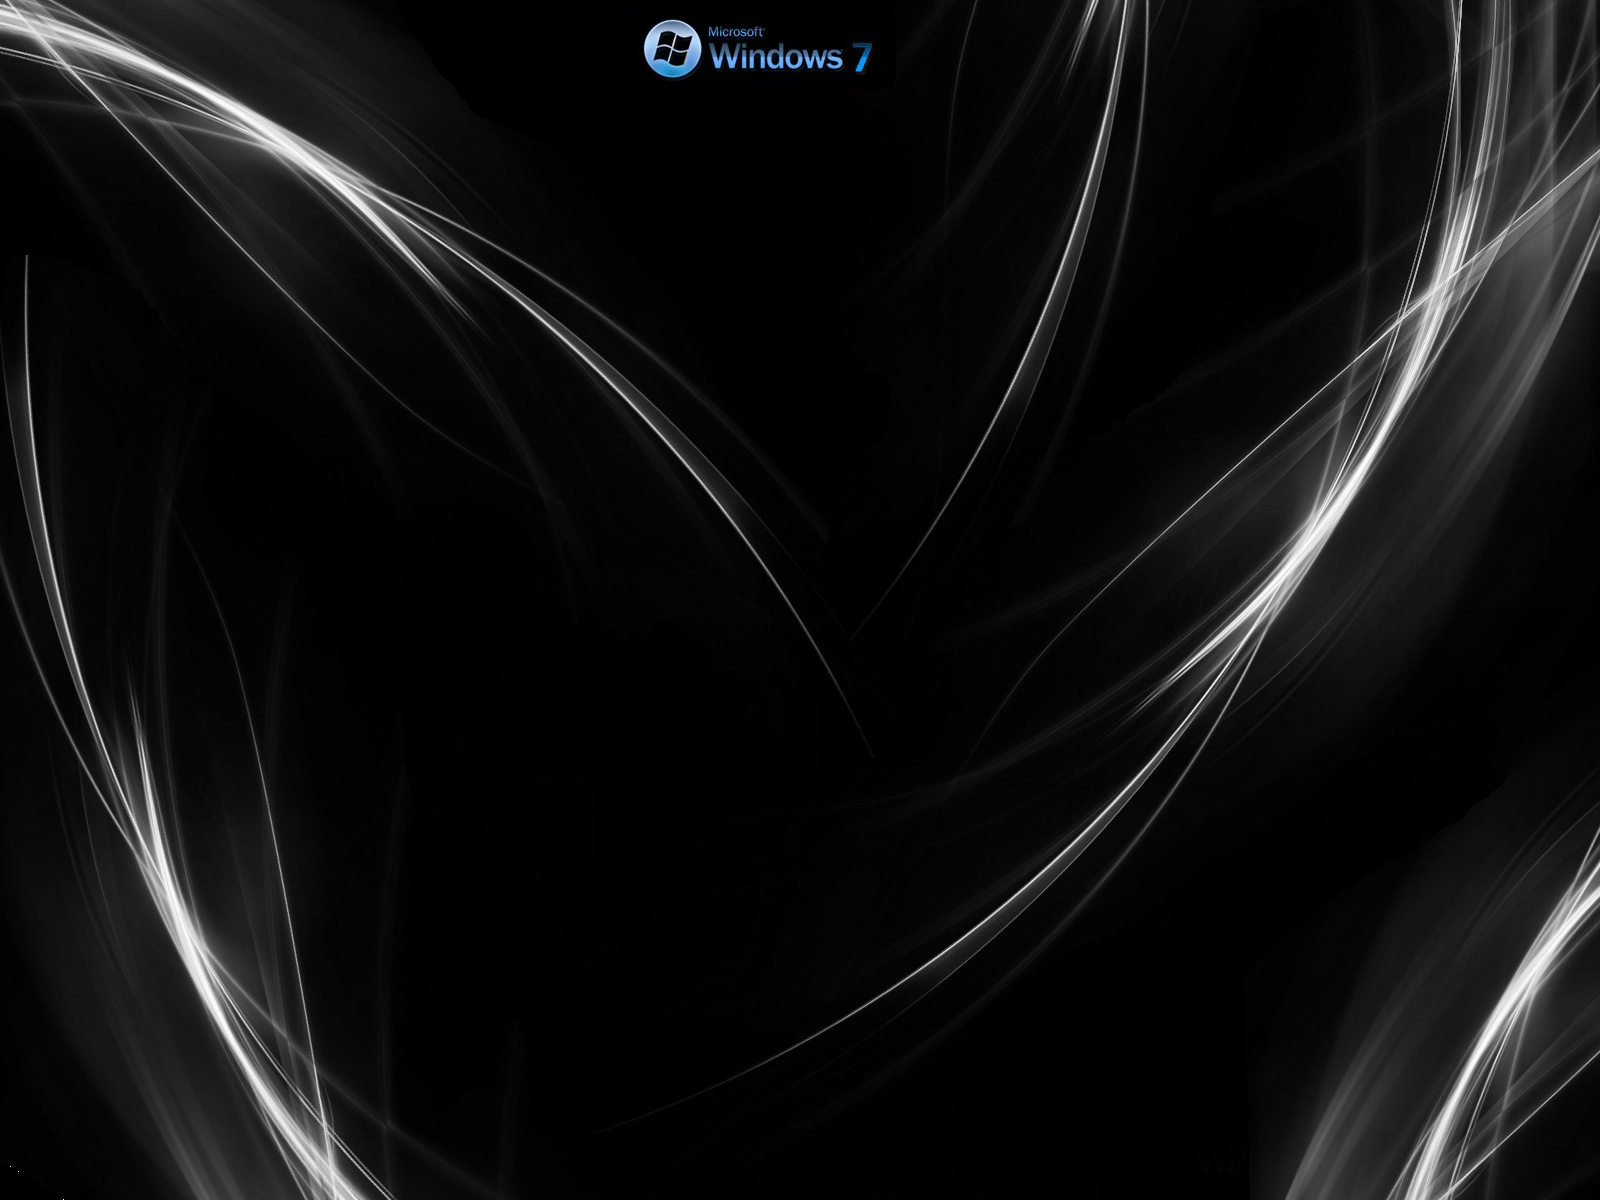 NET aberto… ai criei esse Wallpaper e coloquei o logo do Windows 7 e o nome 